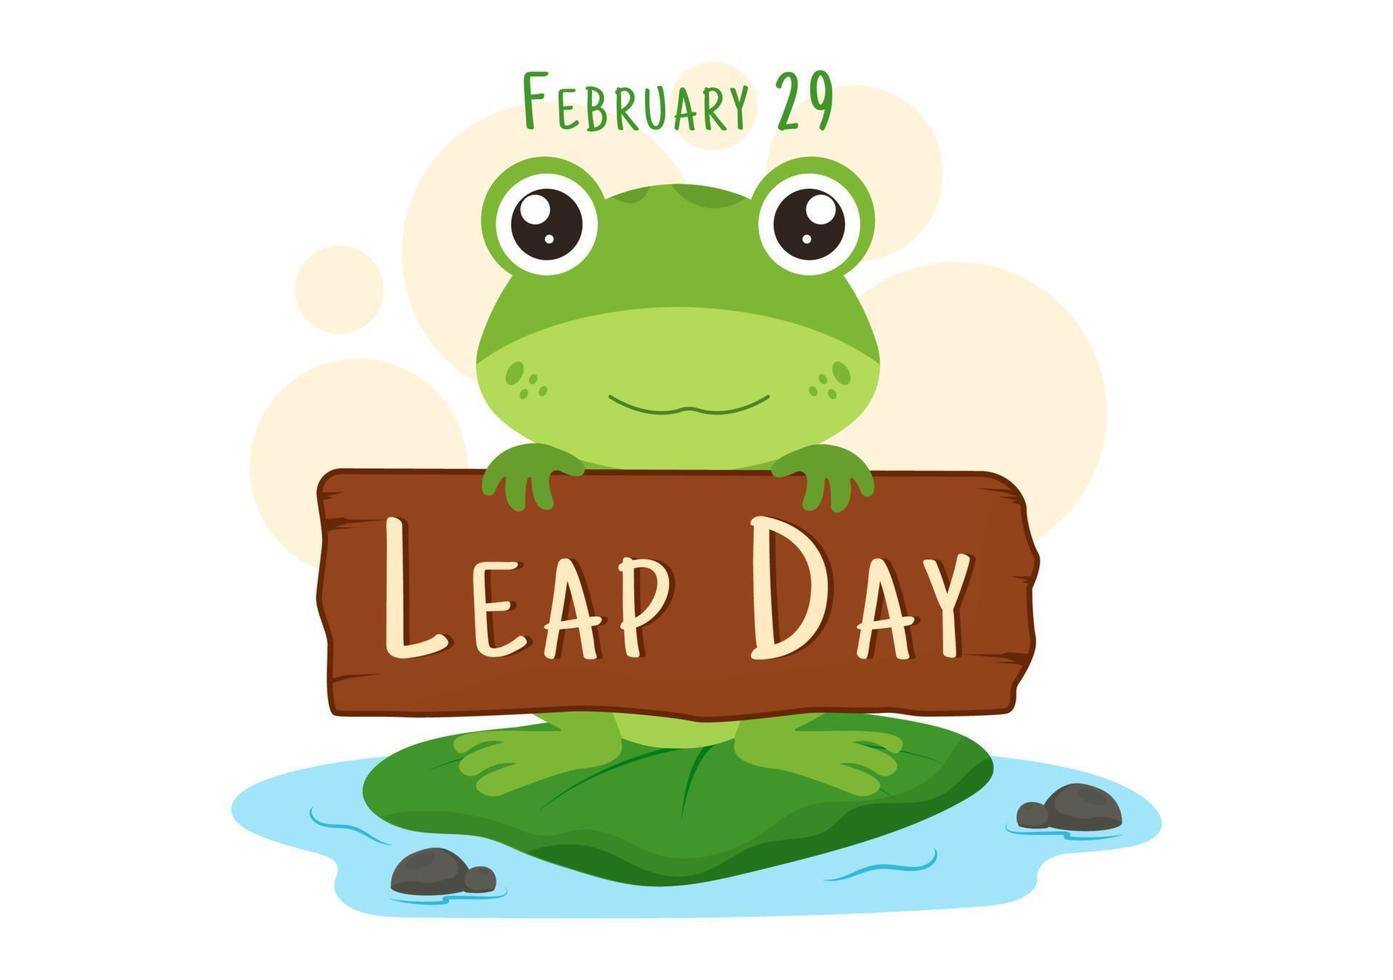 feliz día bisiesto el 29 de febrero con linda rana en dibujos animados de estilo plano dibujado a mano ilustración de plantillas de fondo vector